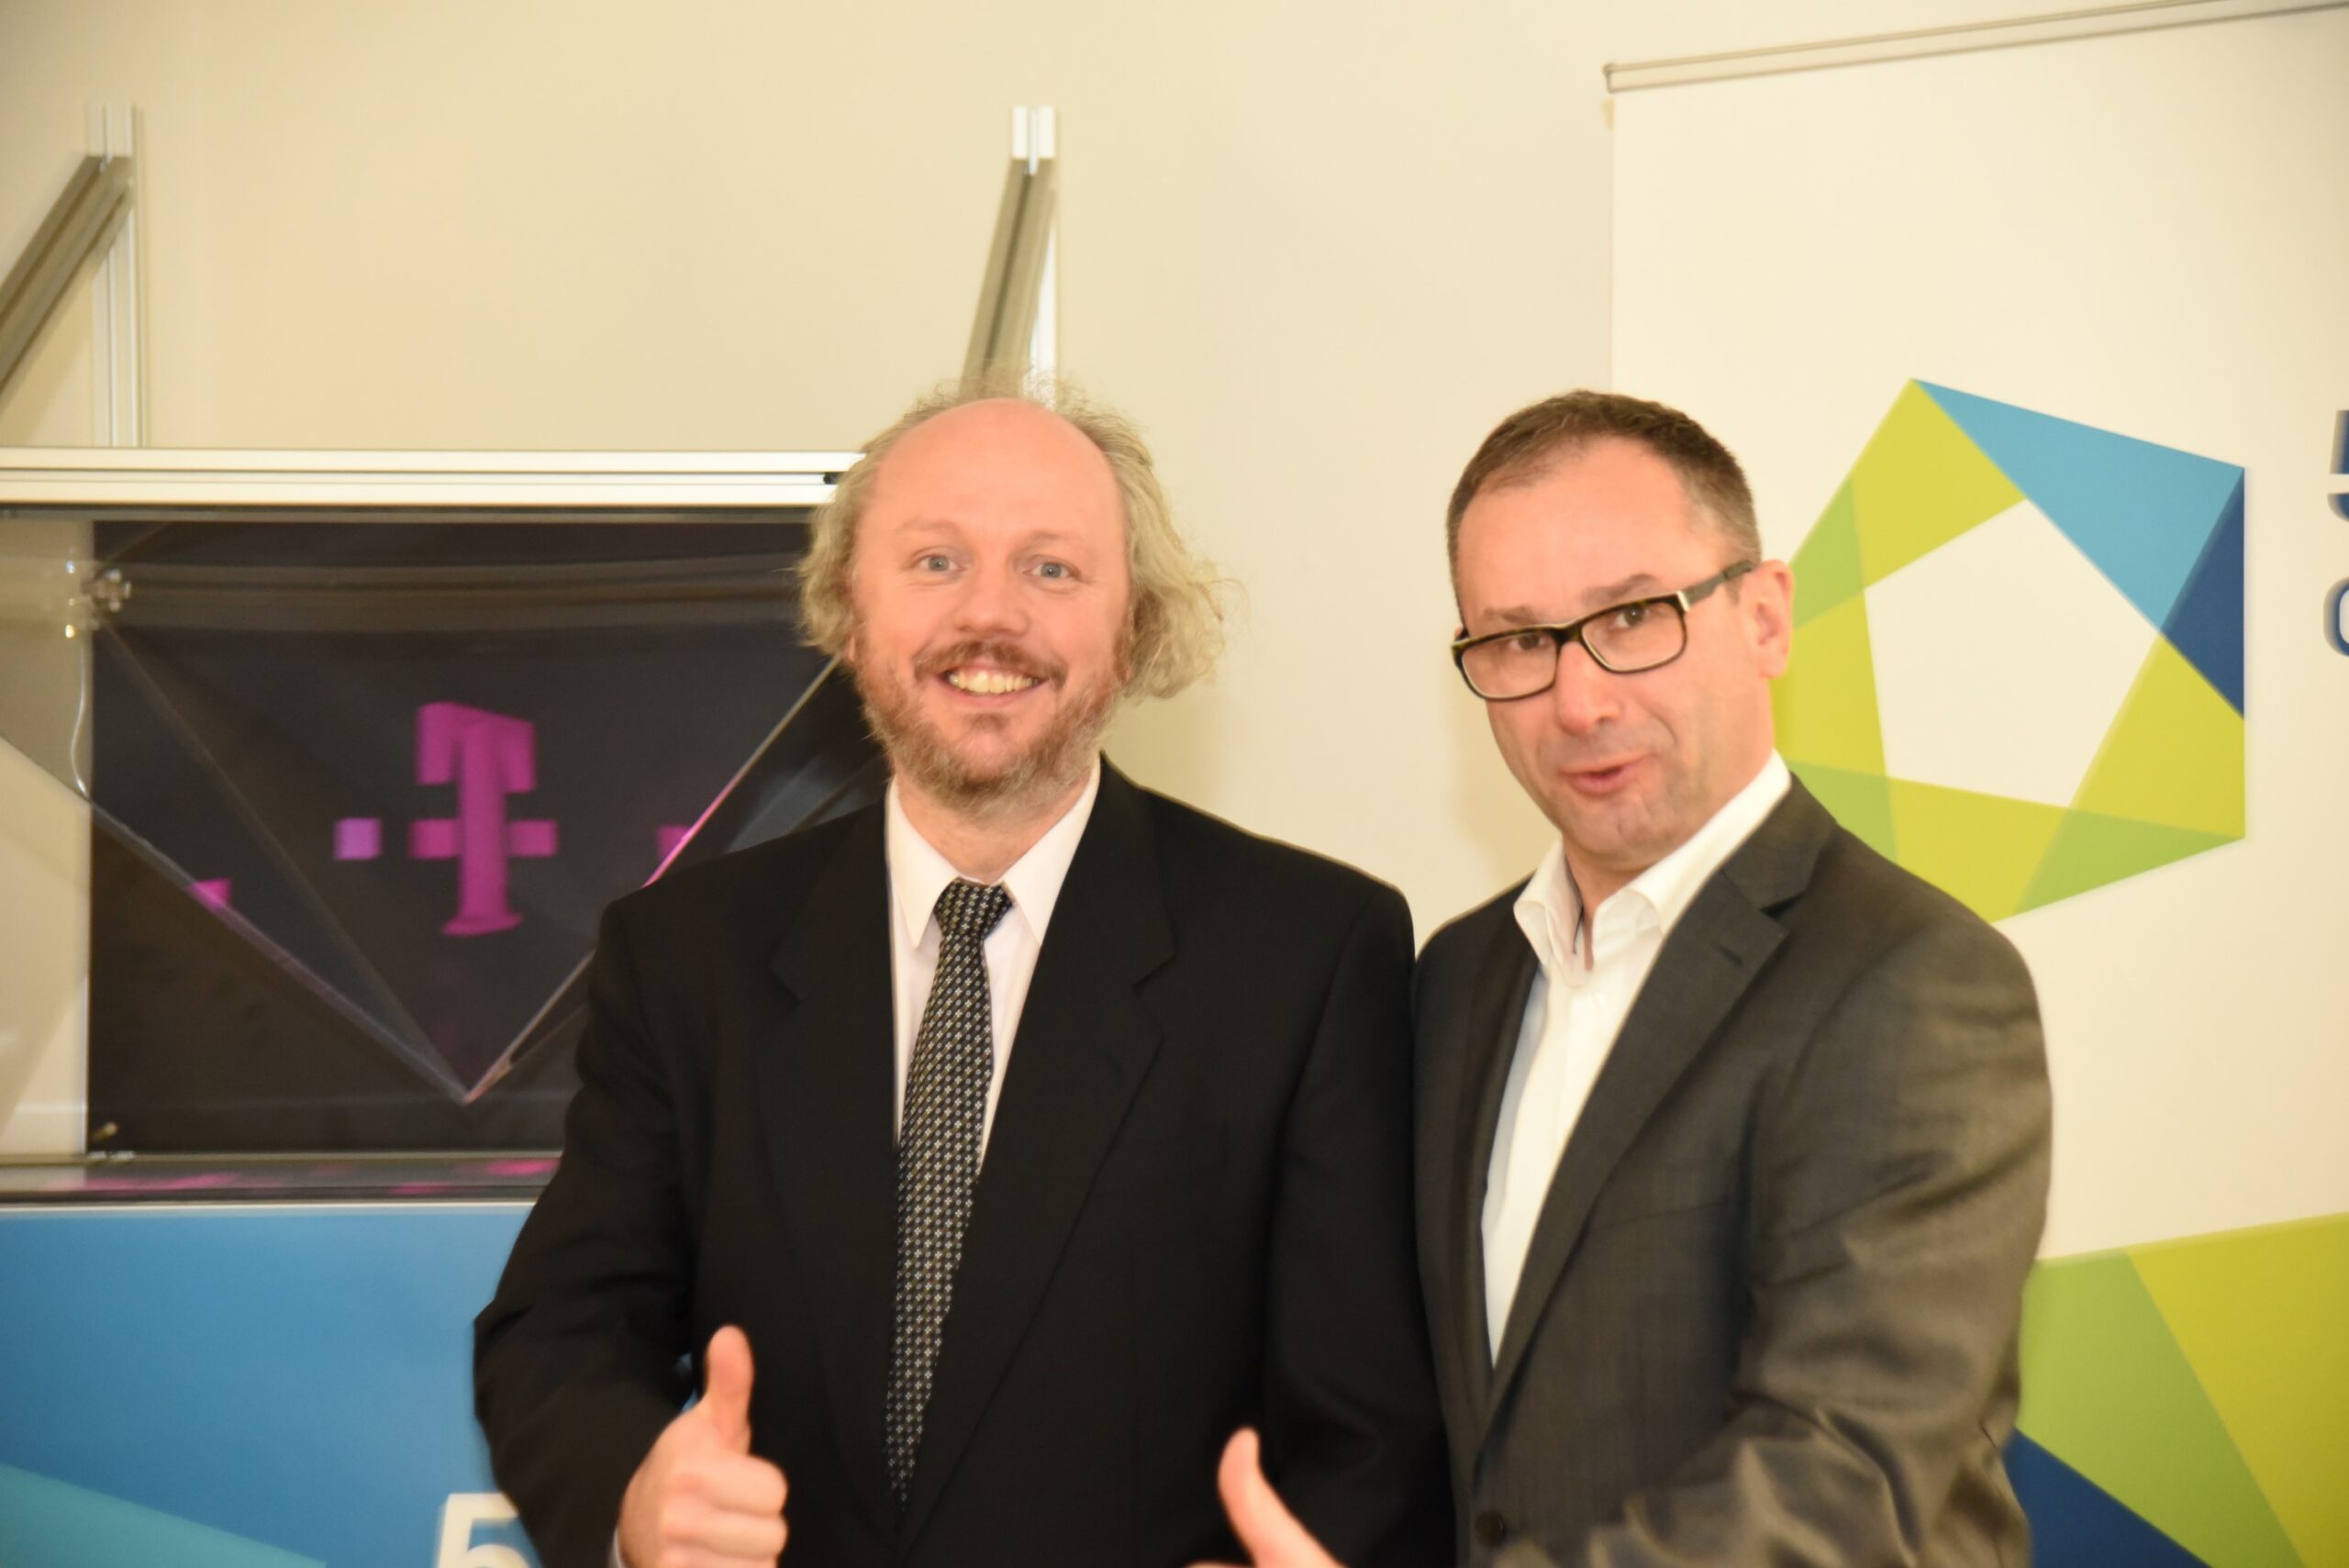 Gallery Deutsche Telekom Chair 1 Year Anniversary